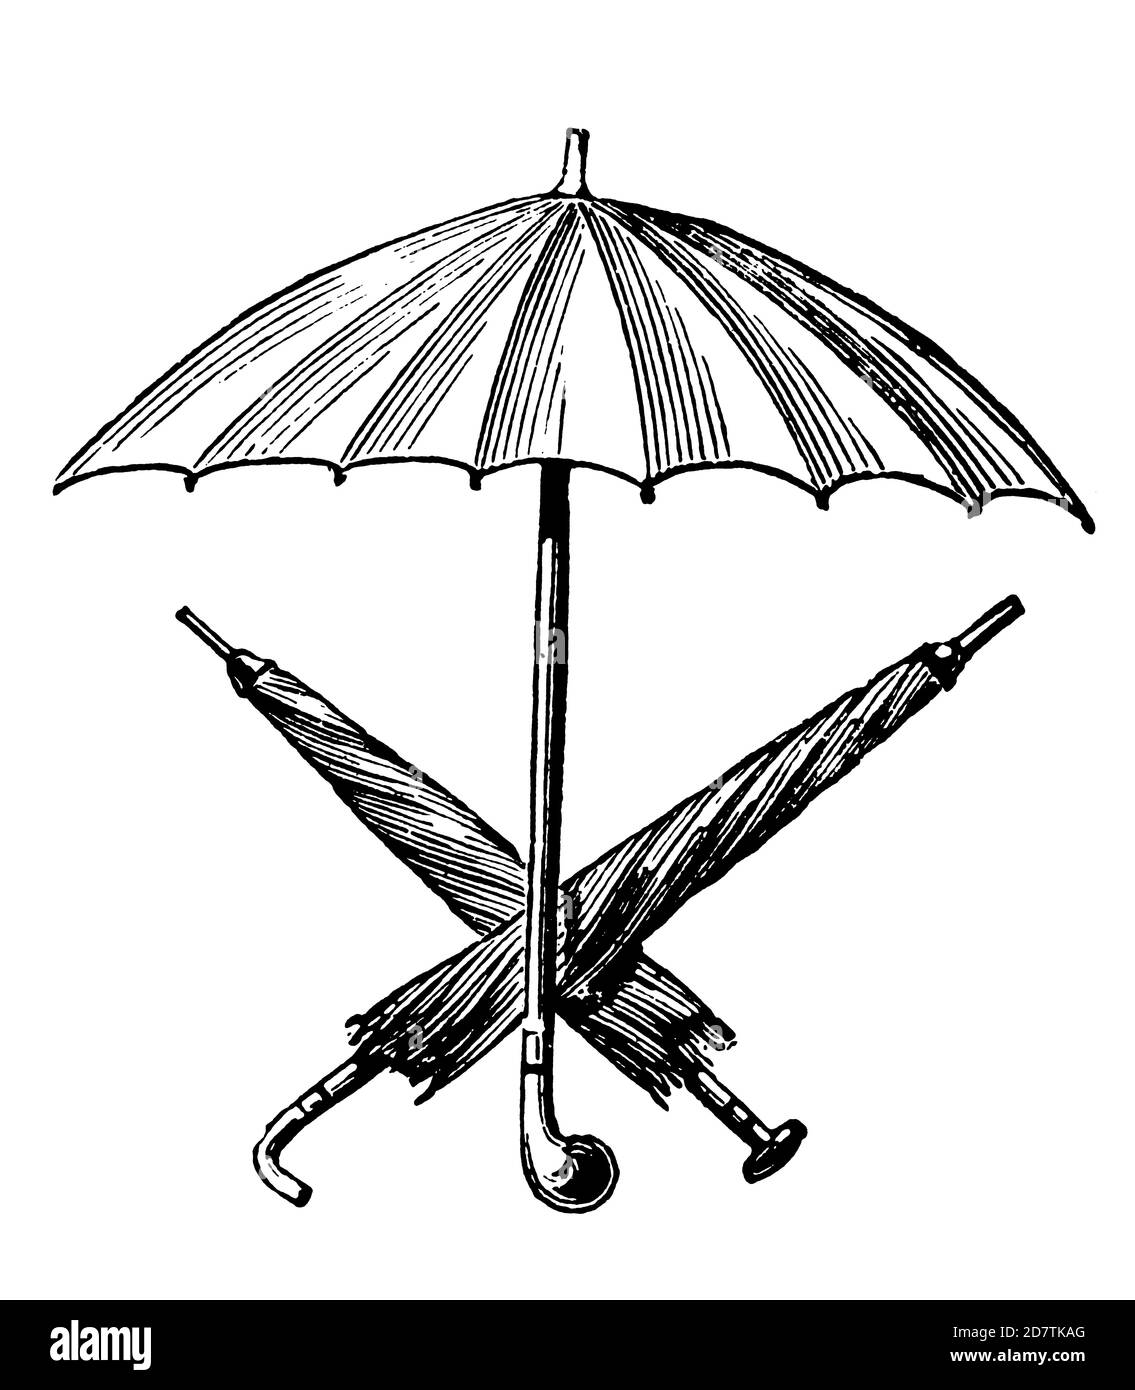 Illustrazione classica di ombrelli (isolati su bianco). Pubblicato in exspecimes des divers caracteres et vignettes tipographiques de la fonderie da parte del pubblico Foto Stock